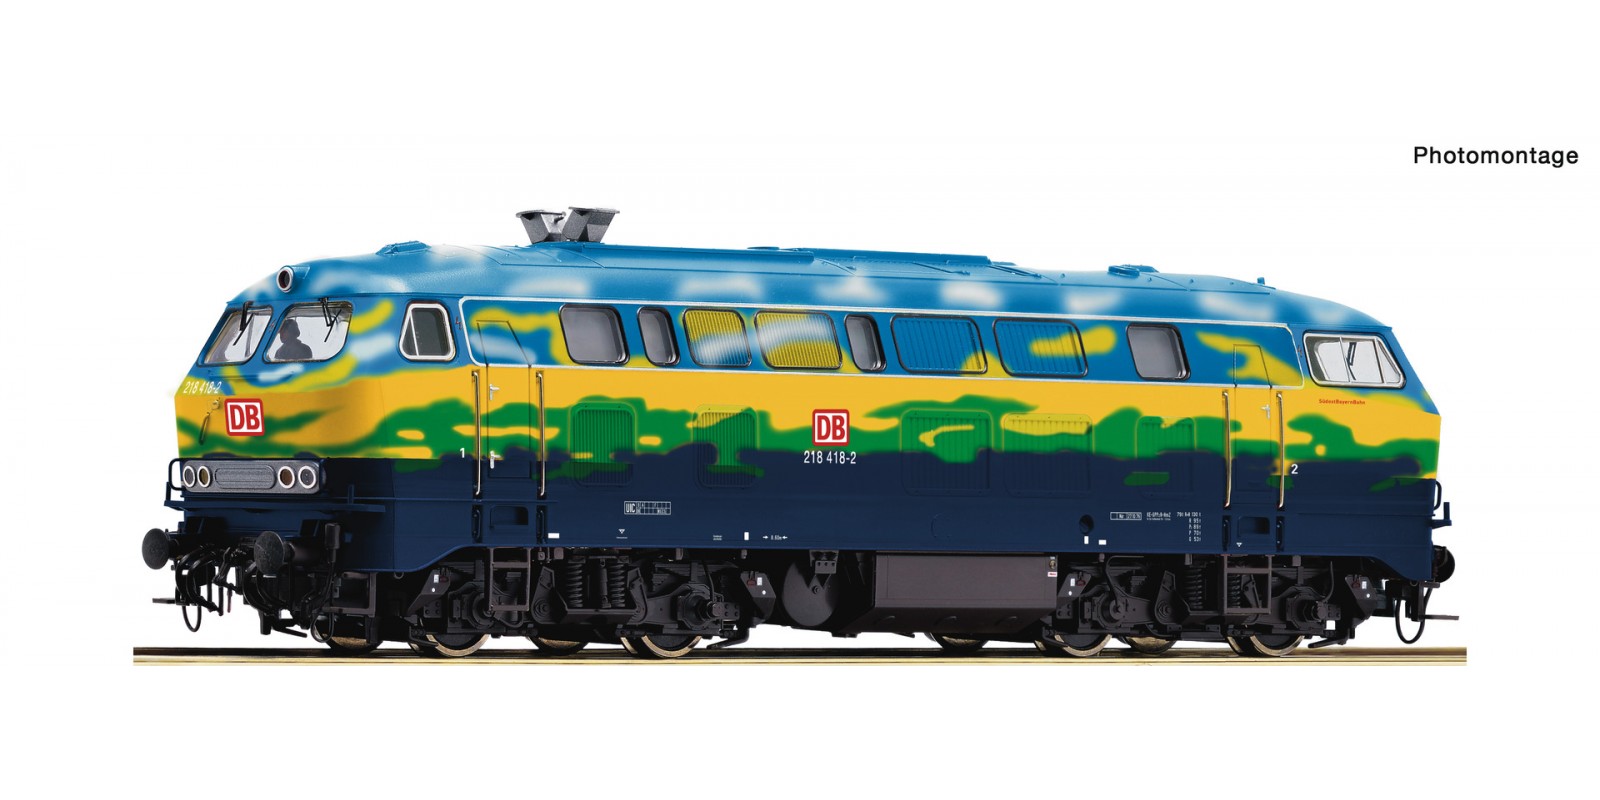 RO70758 Diesel locomotive 218 418-2